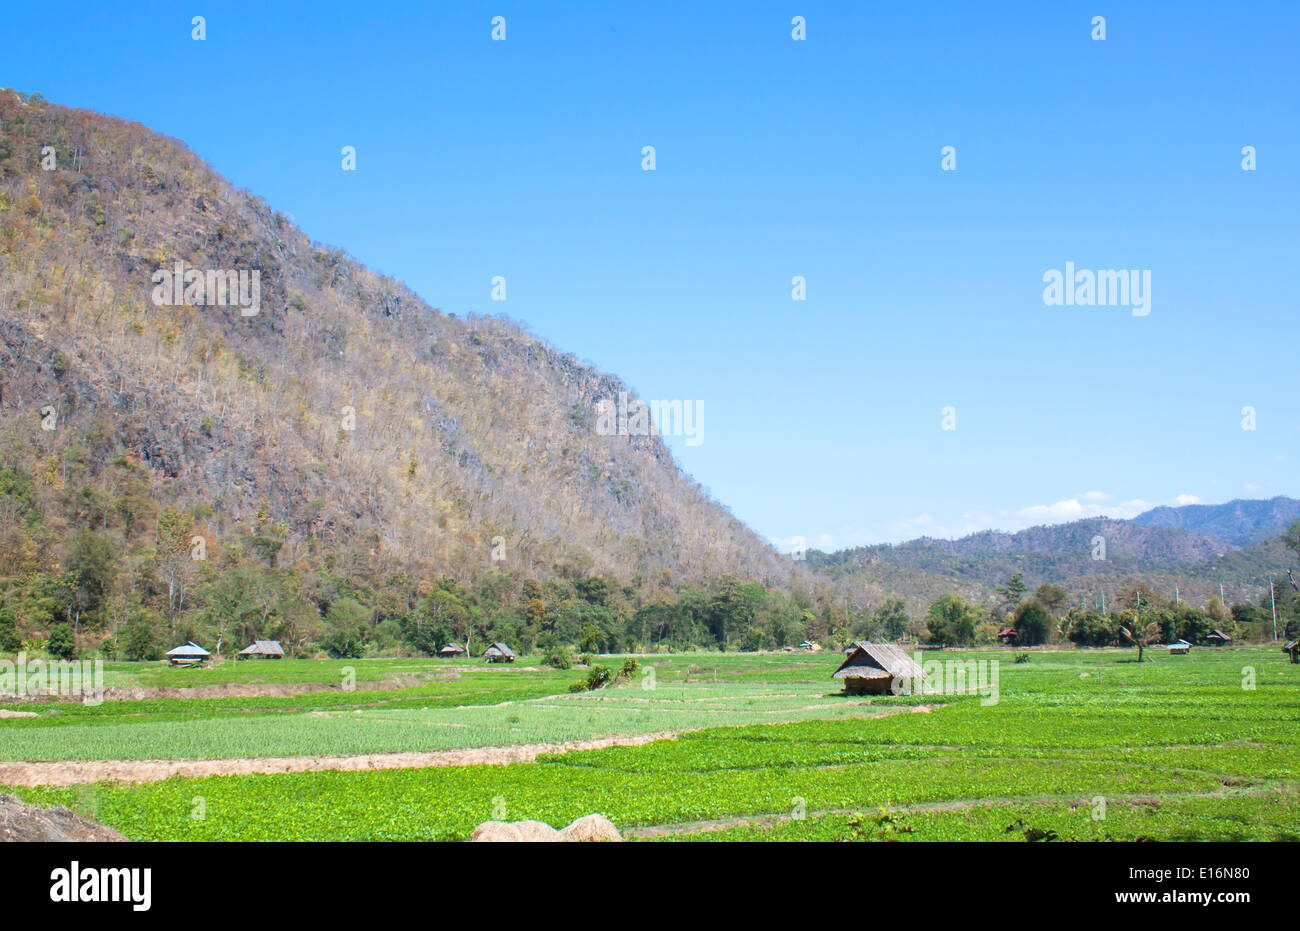 La agricultura, paisajes naturales, montañas de oro de campo de agricultores. Foto de stock